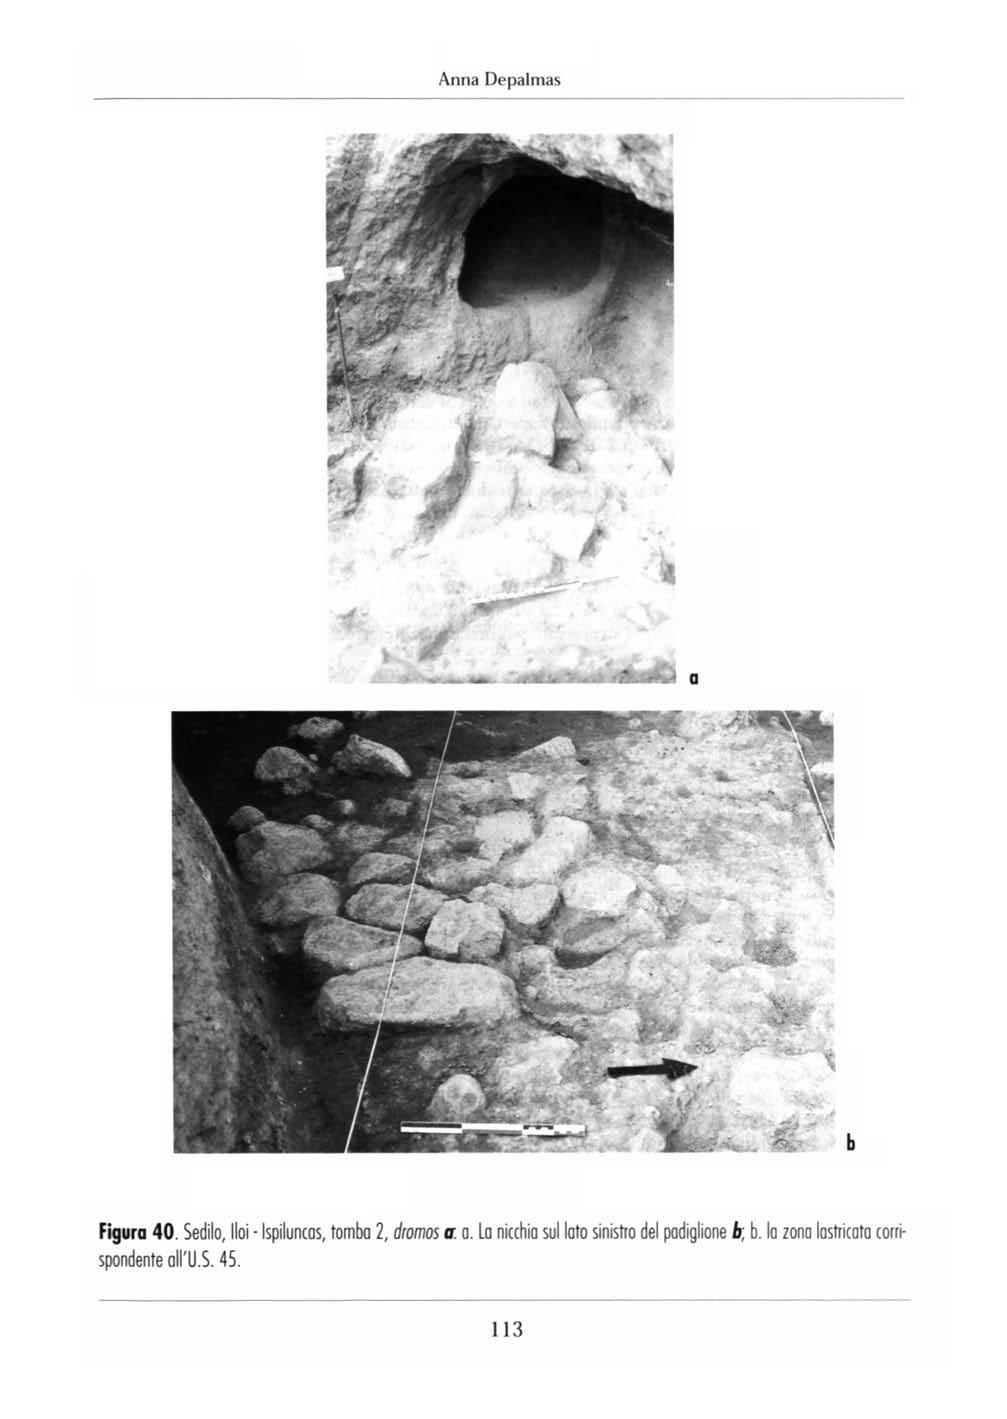 Anna Depalmas a b Figura 40. Sedilo, lioi -Ispiluncas, tomba 2, dromos a. a. Lo nicchio sul lato sinistro del padiglione b; b.